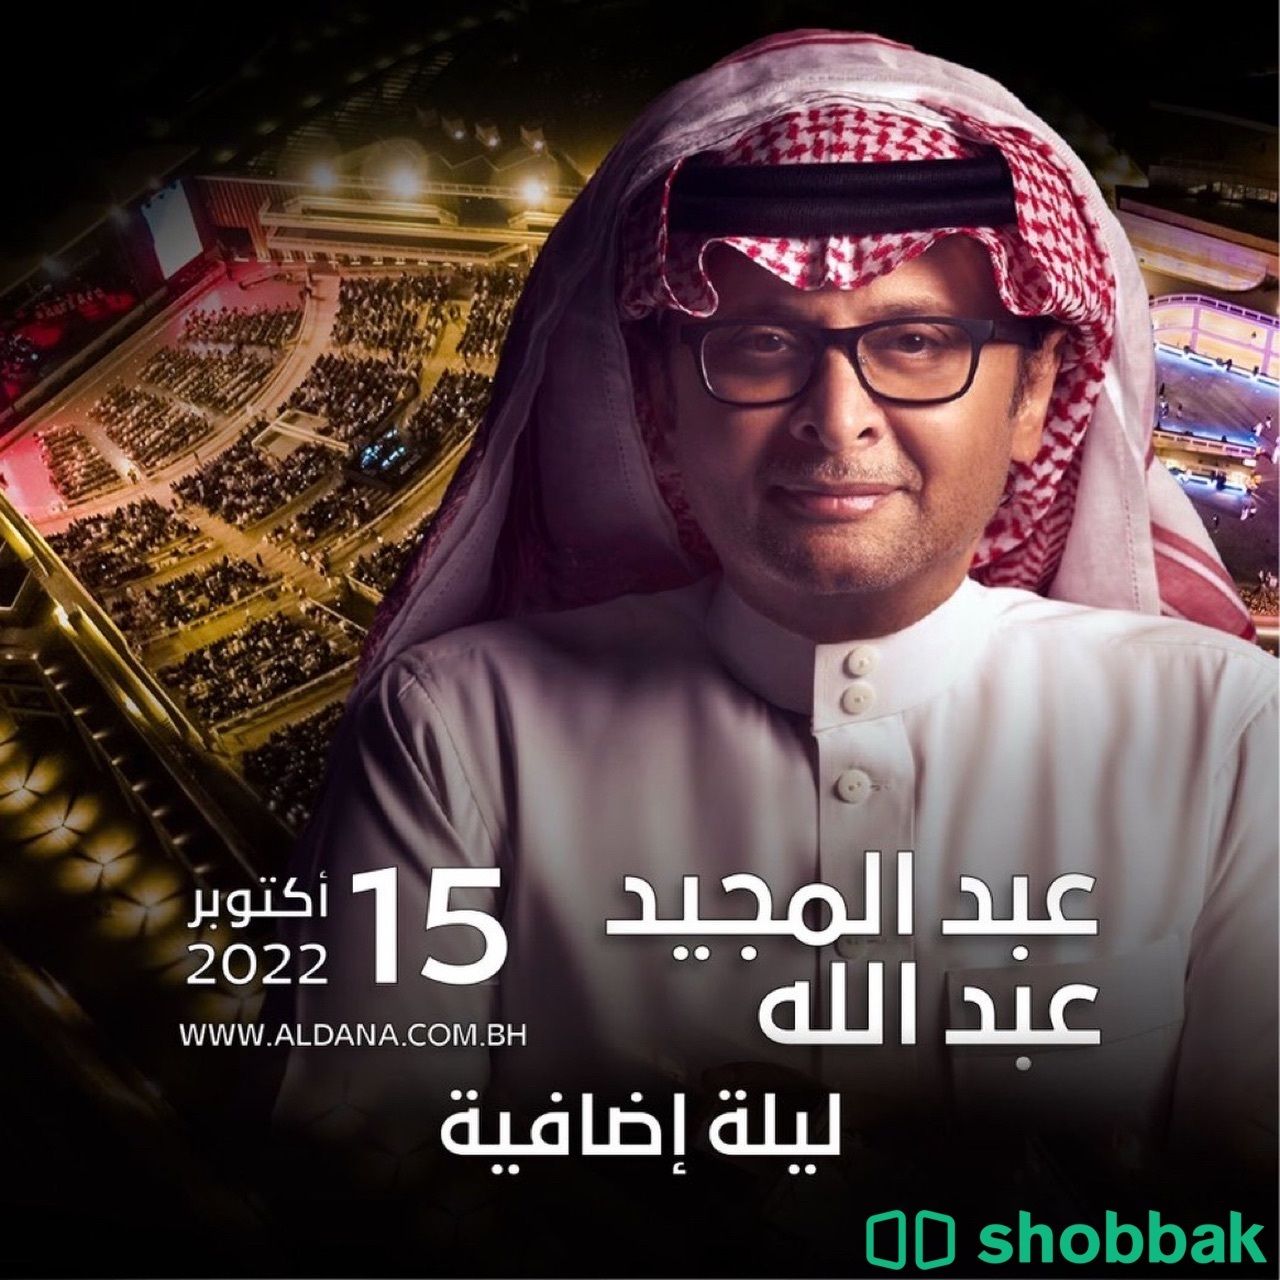 حفل الفنان عبدالمجيد عبدالله في البحرين  Shobbak Saudi Arabia